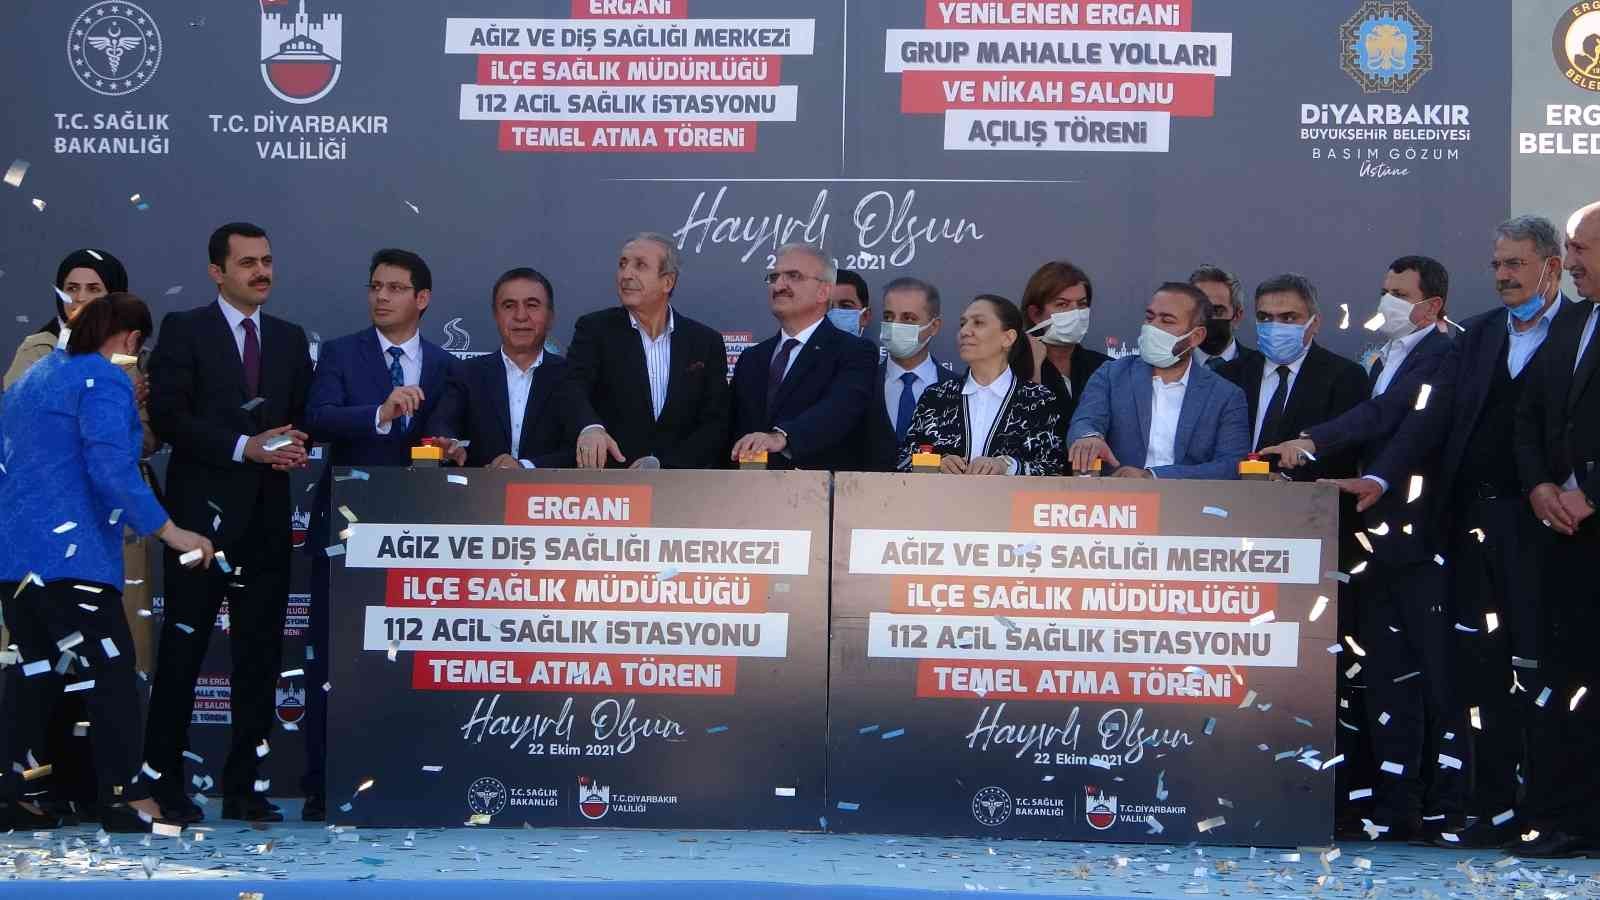 Vali Karaloğlu talimat verdi, Ergani’de dev projeler başladı #diyarbakir